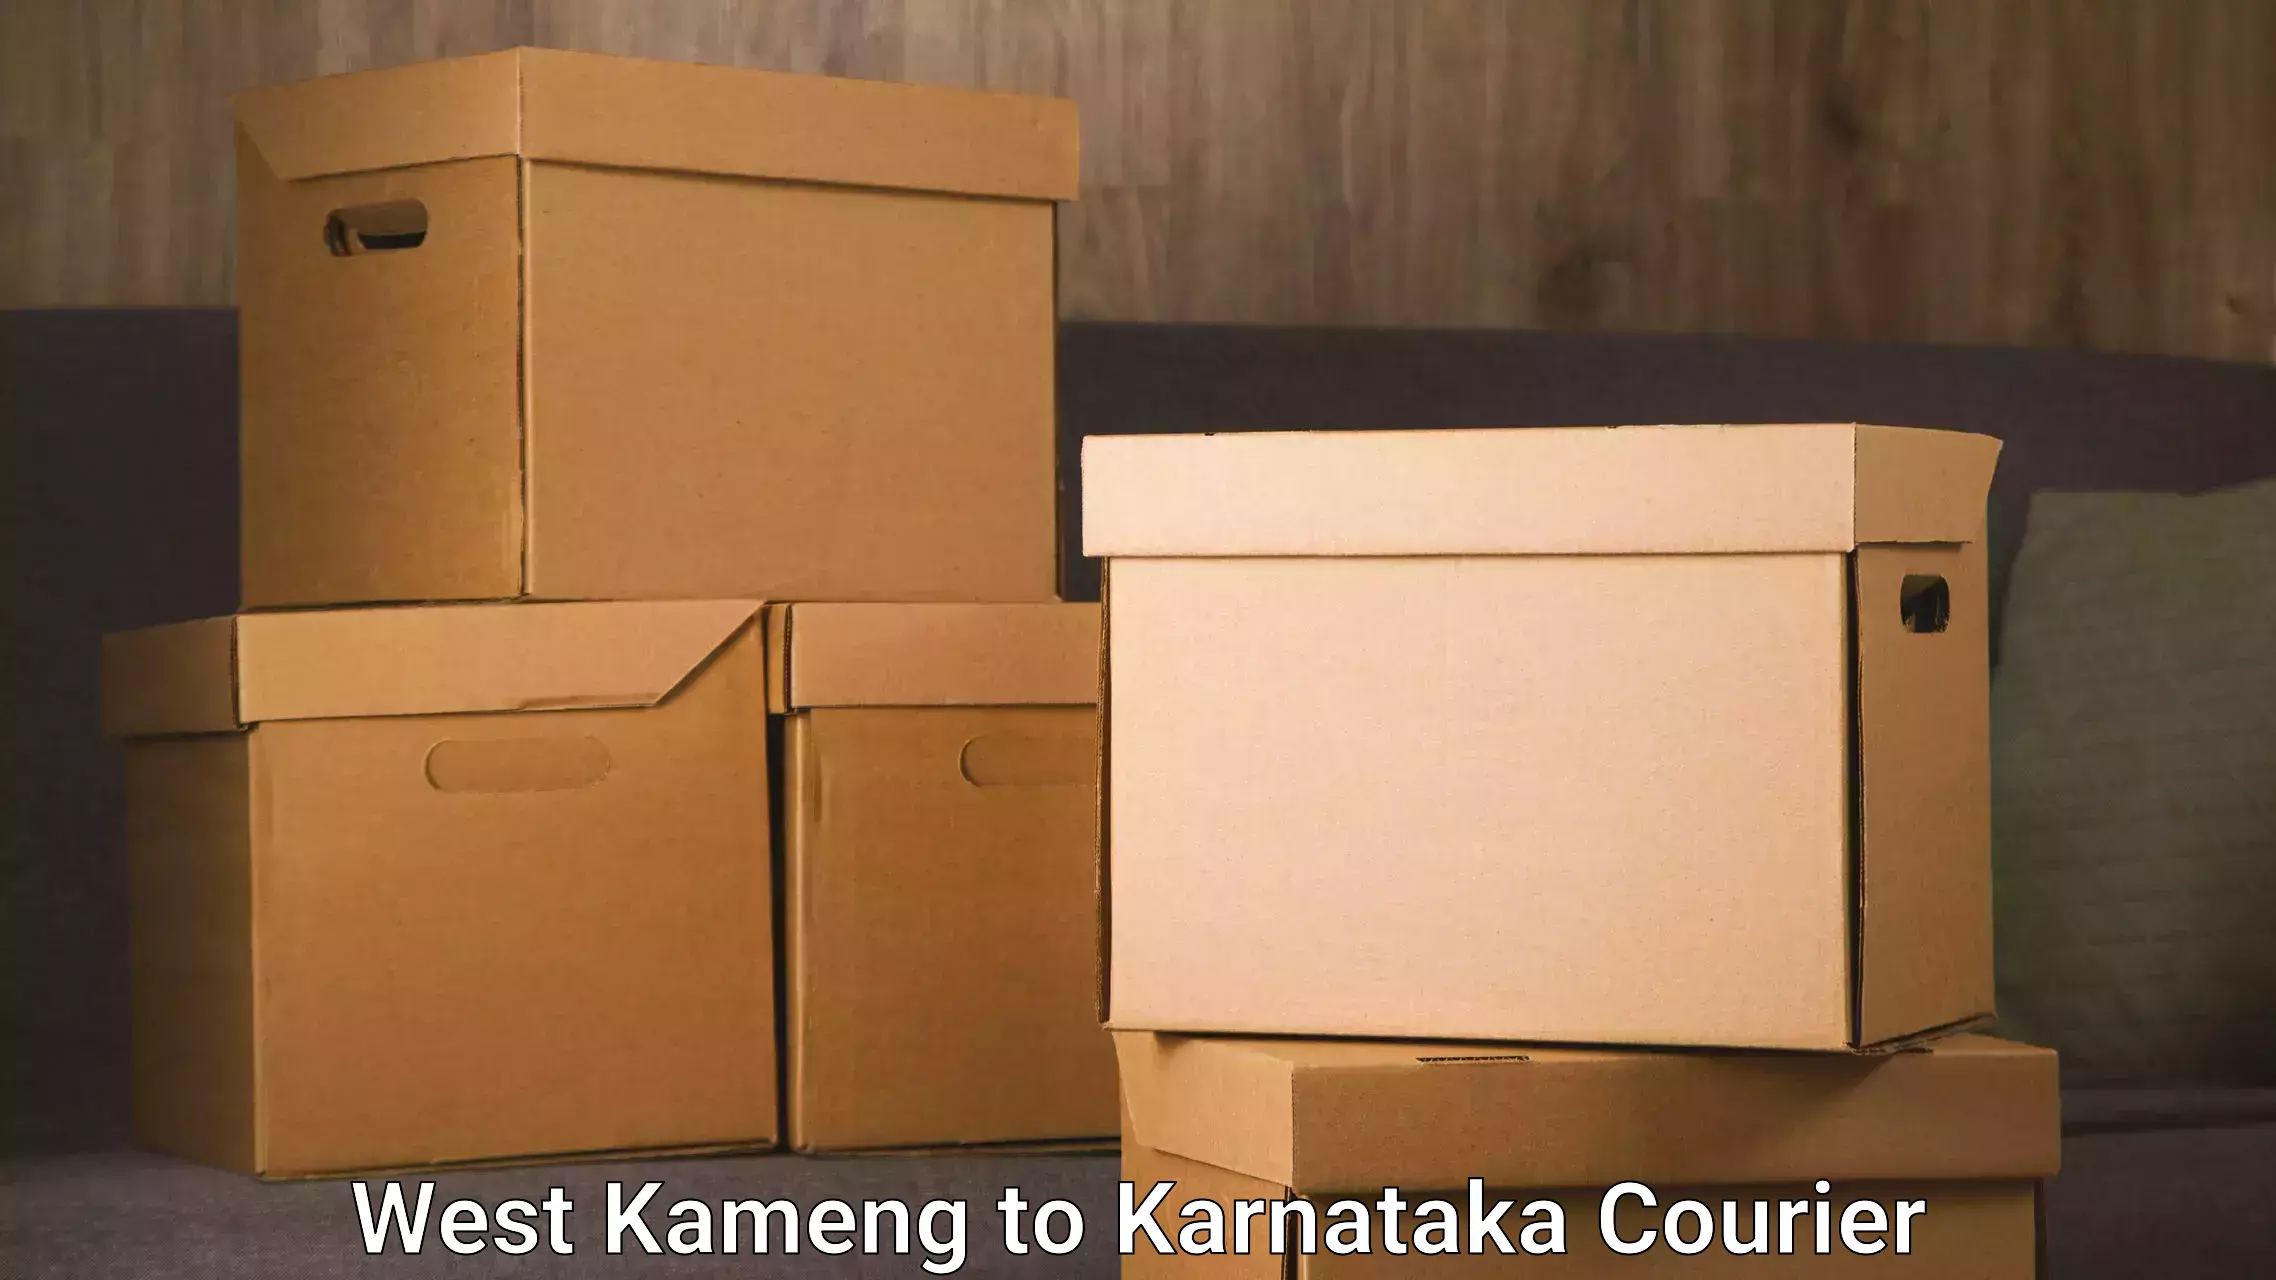 High-speed parcel service West Kameng to Chikkaballapur